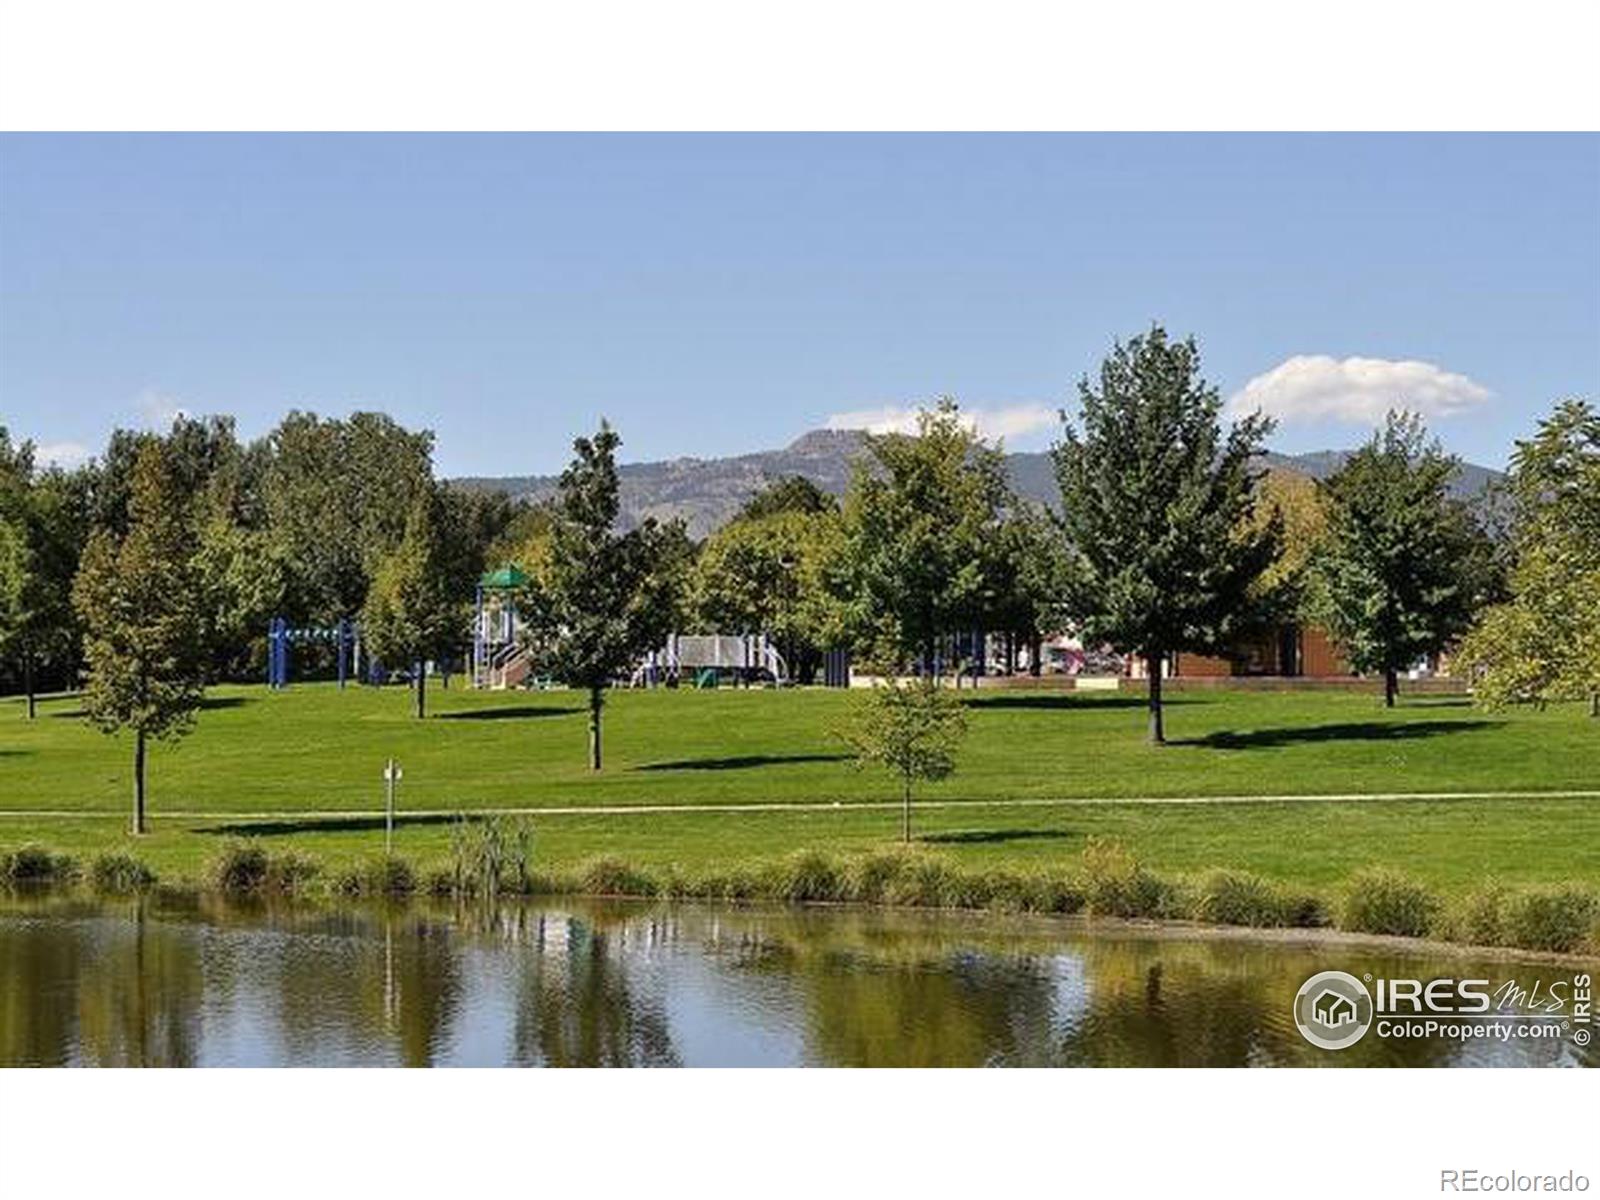 MLS Image #28 for 701  arbor avenue,fort collins, Colorado